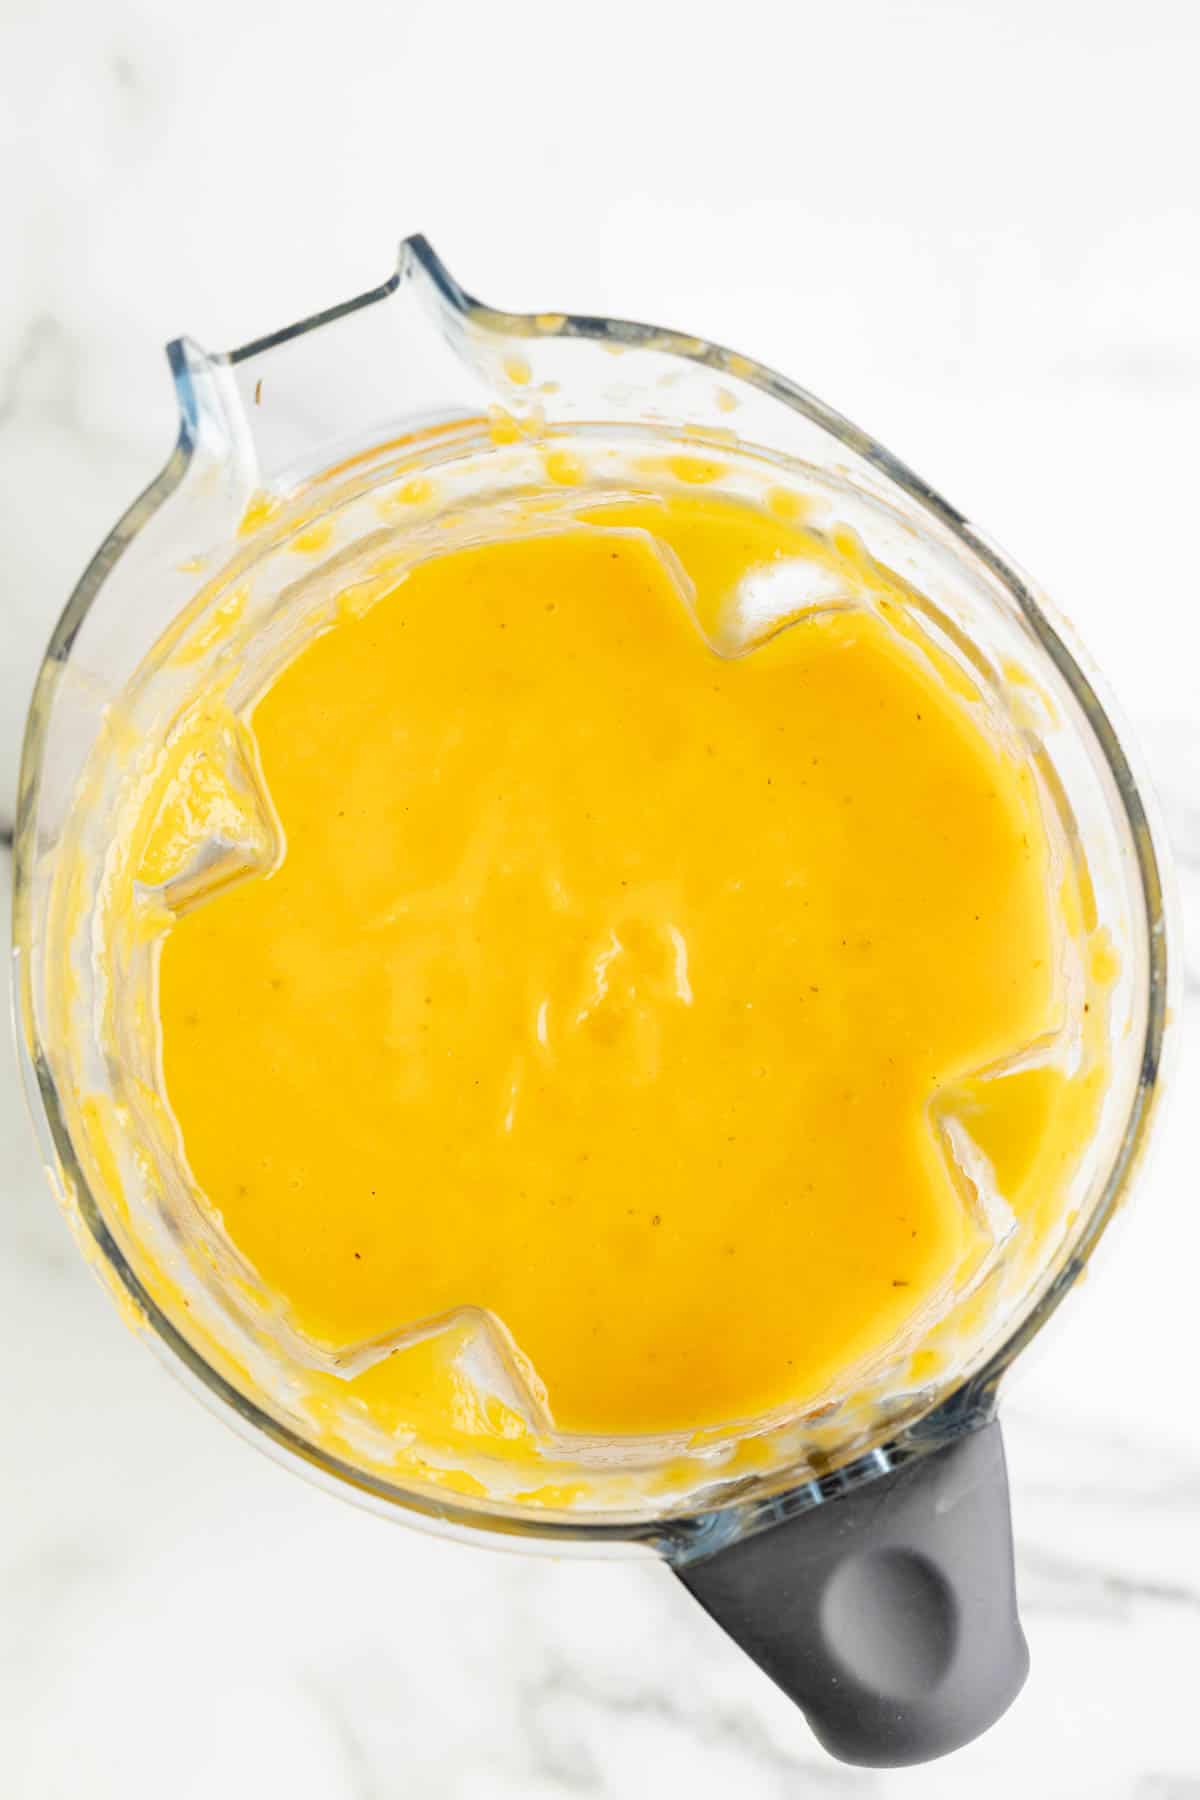 Blended butternut squash soup in a blender.